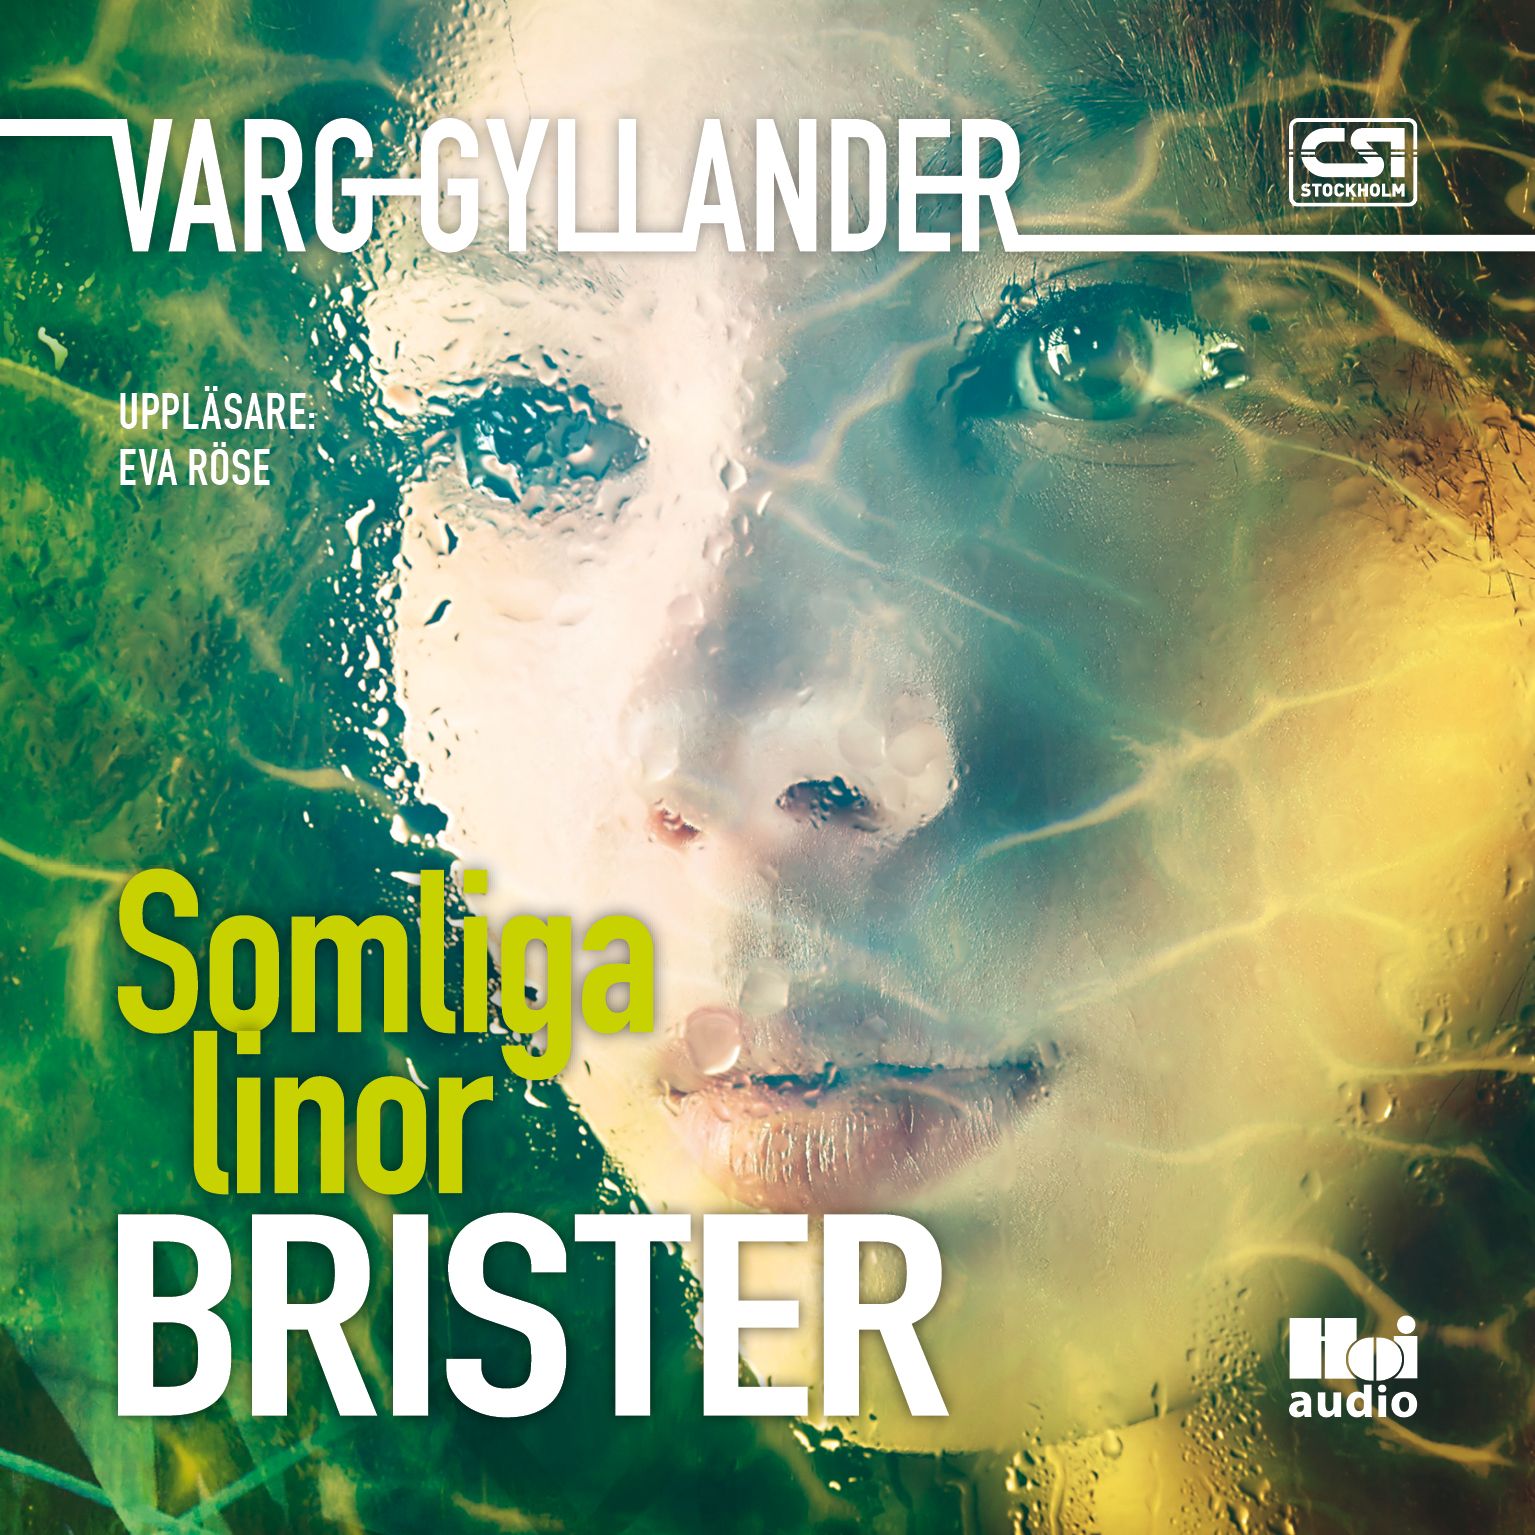 Somliga linor brister, audiobook by Varg Gyllander